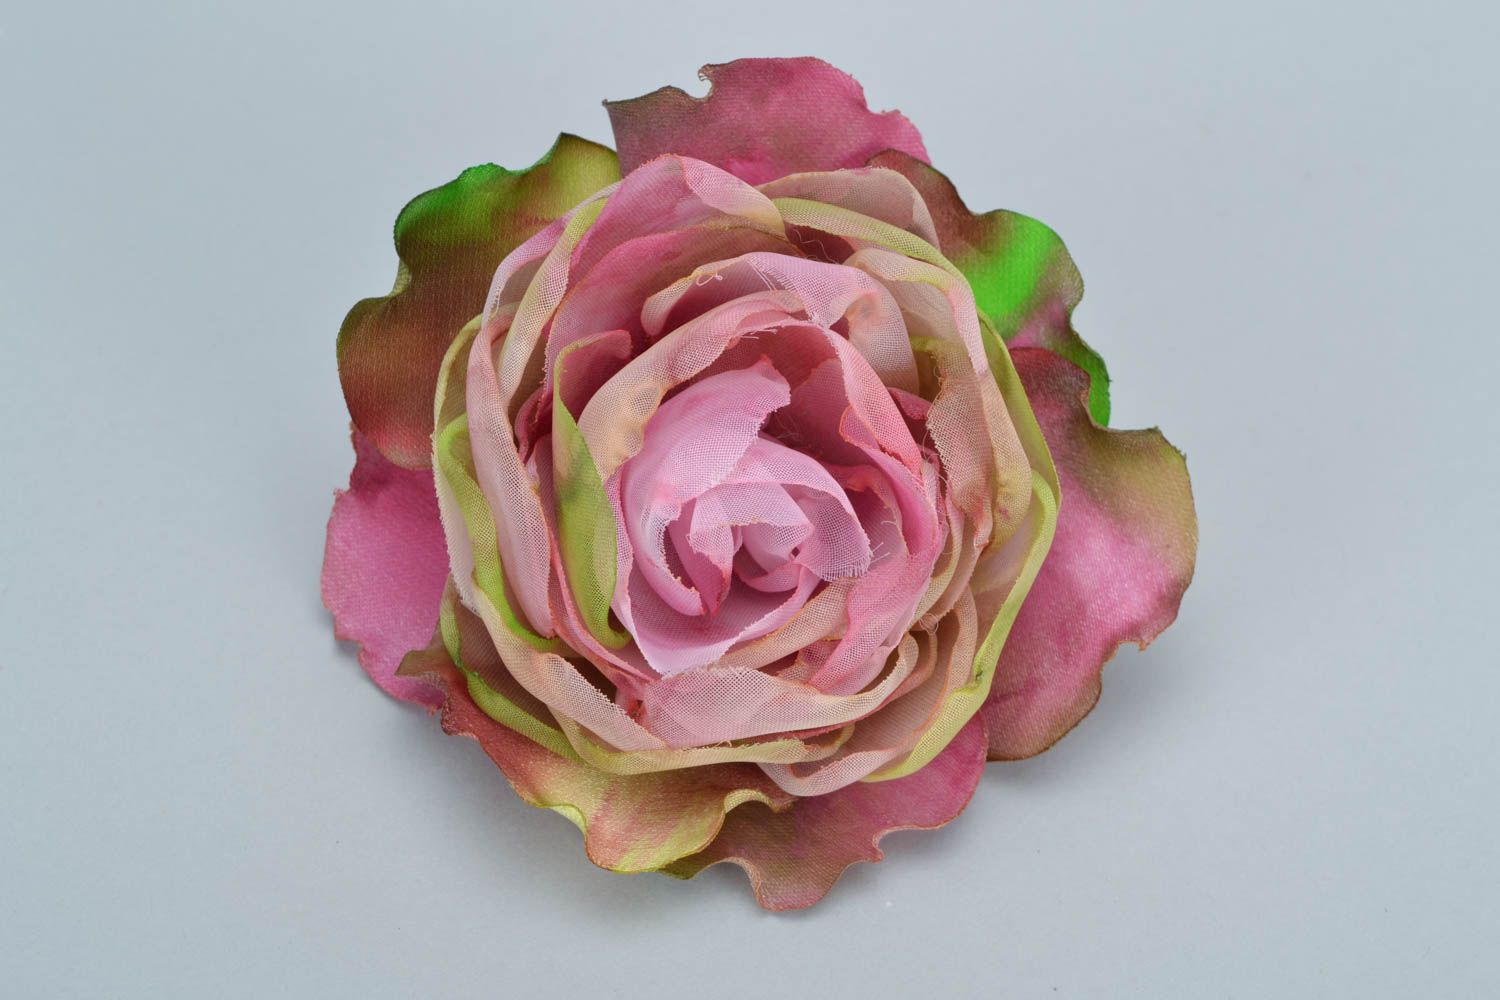 Цветок для волос из органзы и шелка розовый с переливами в технике батик фото 2